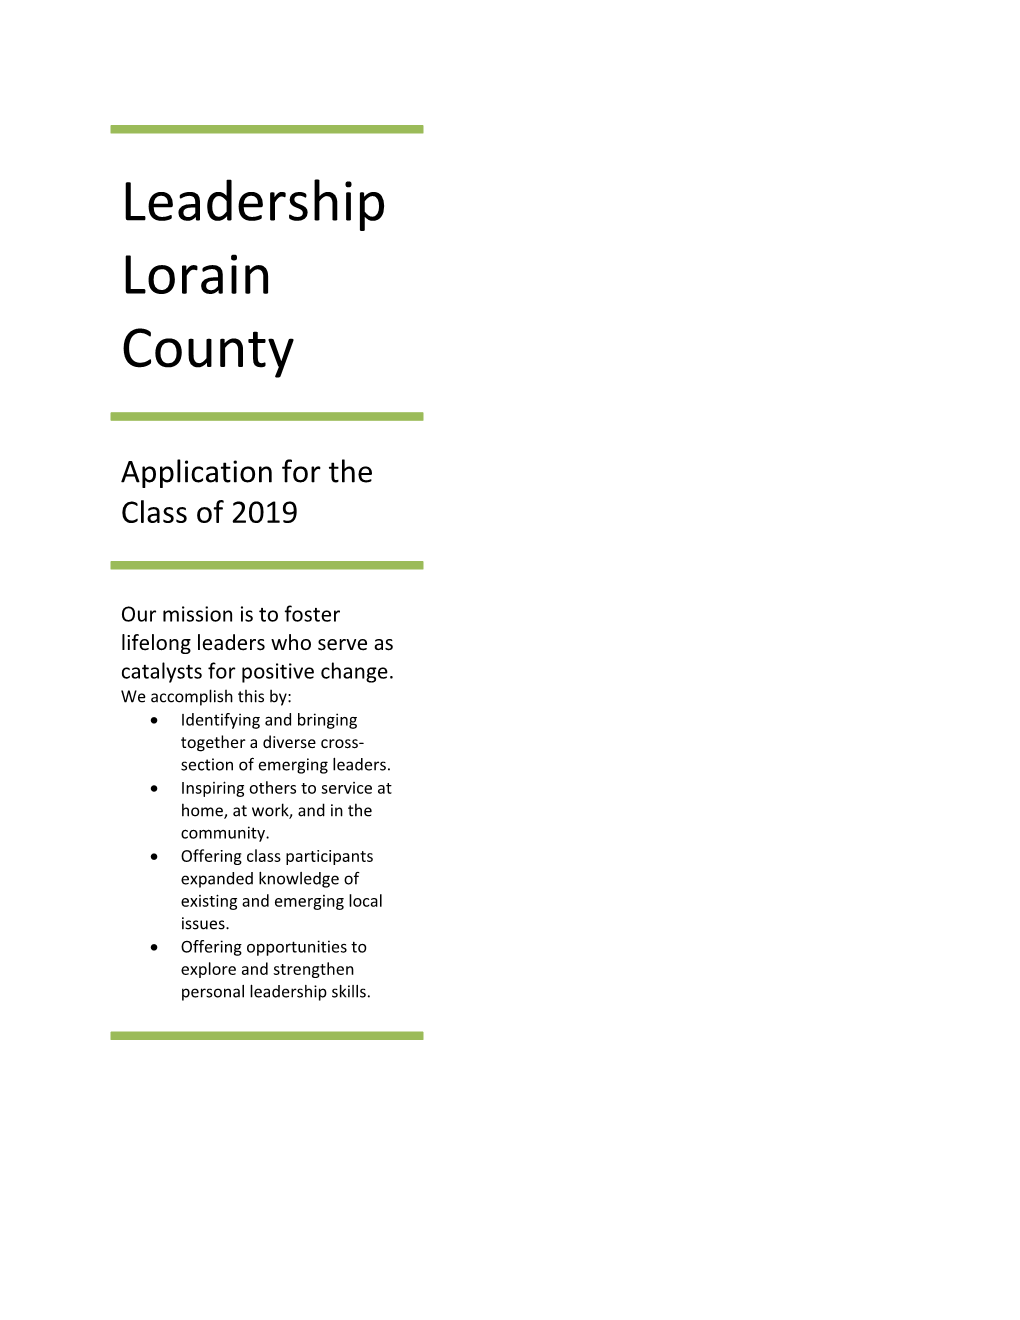 Leadership Lorain County